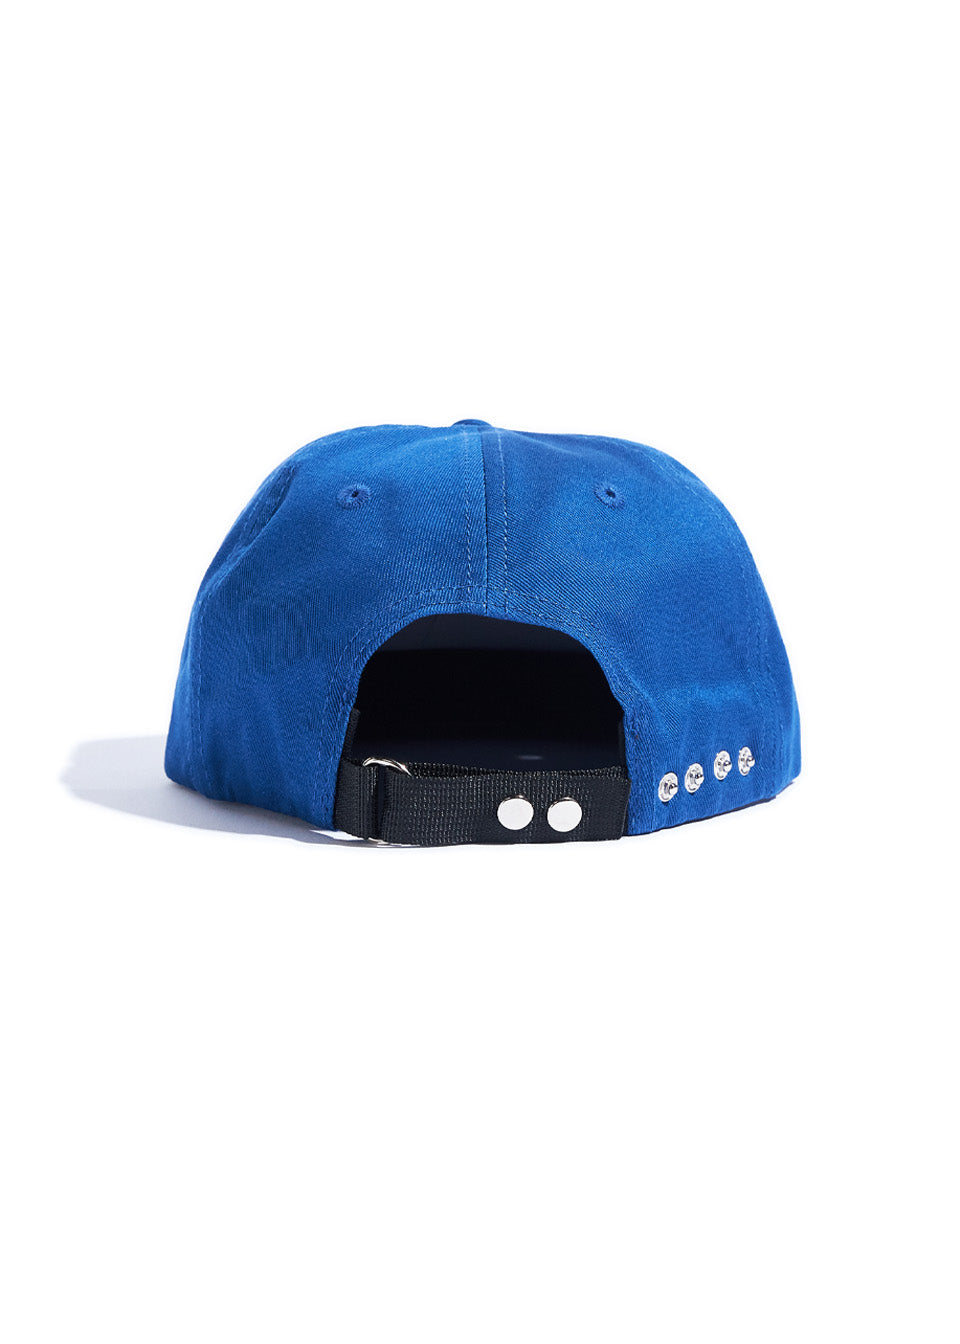 Auto Hat - Blue